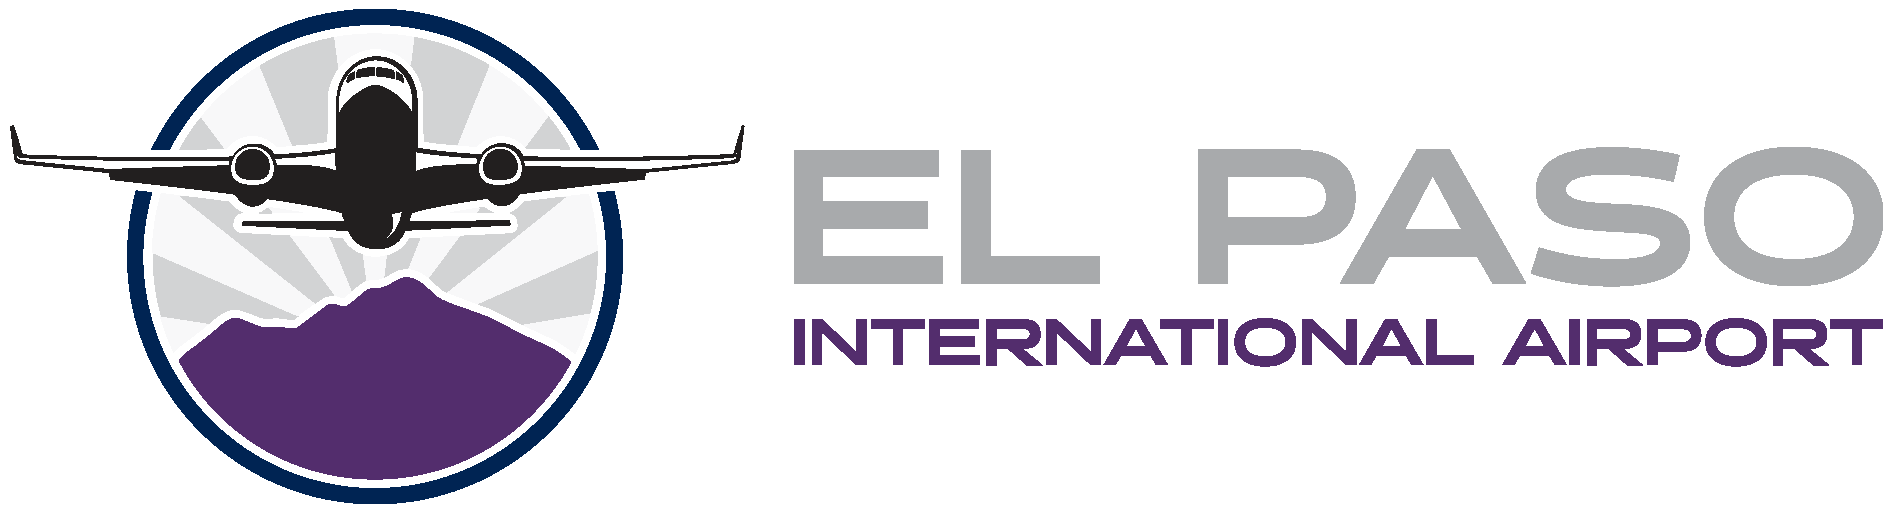 El Paso International Airport (ELP) Logo Vector